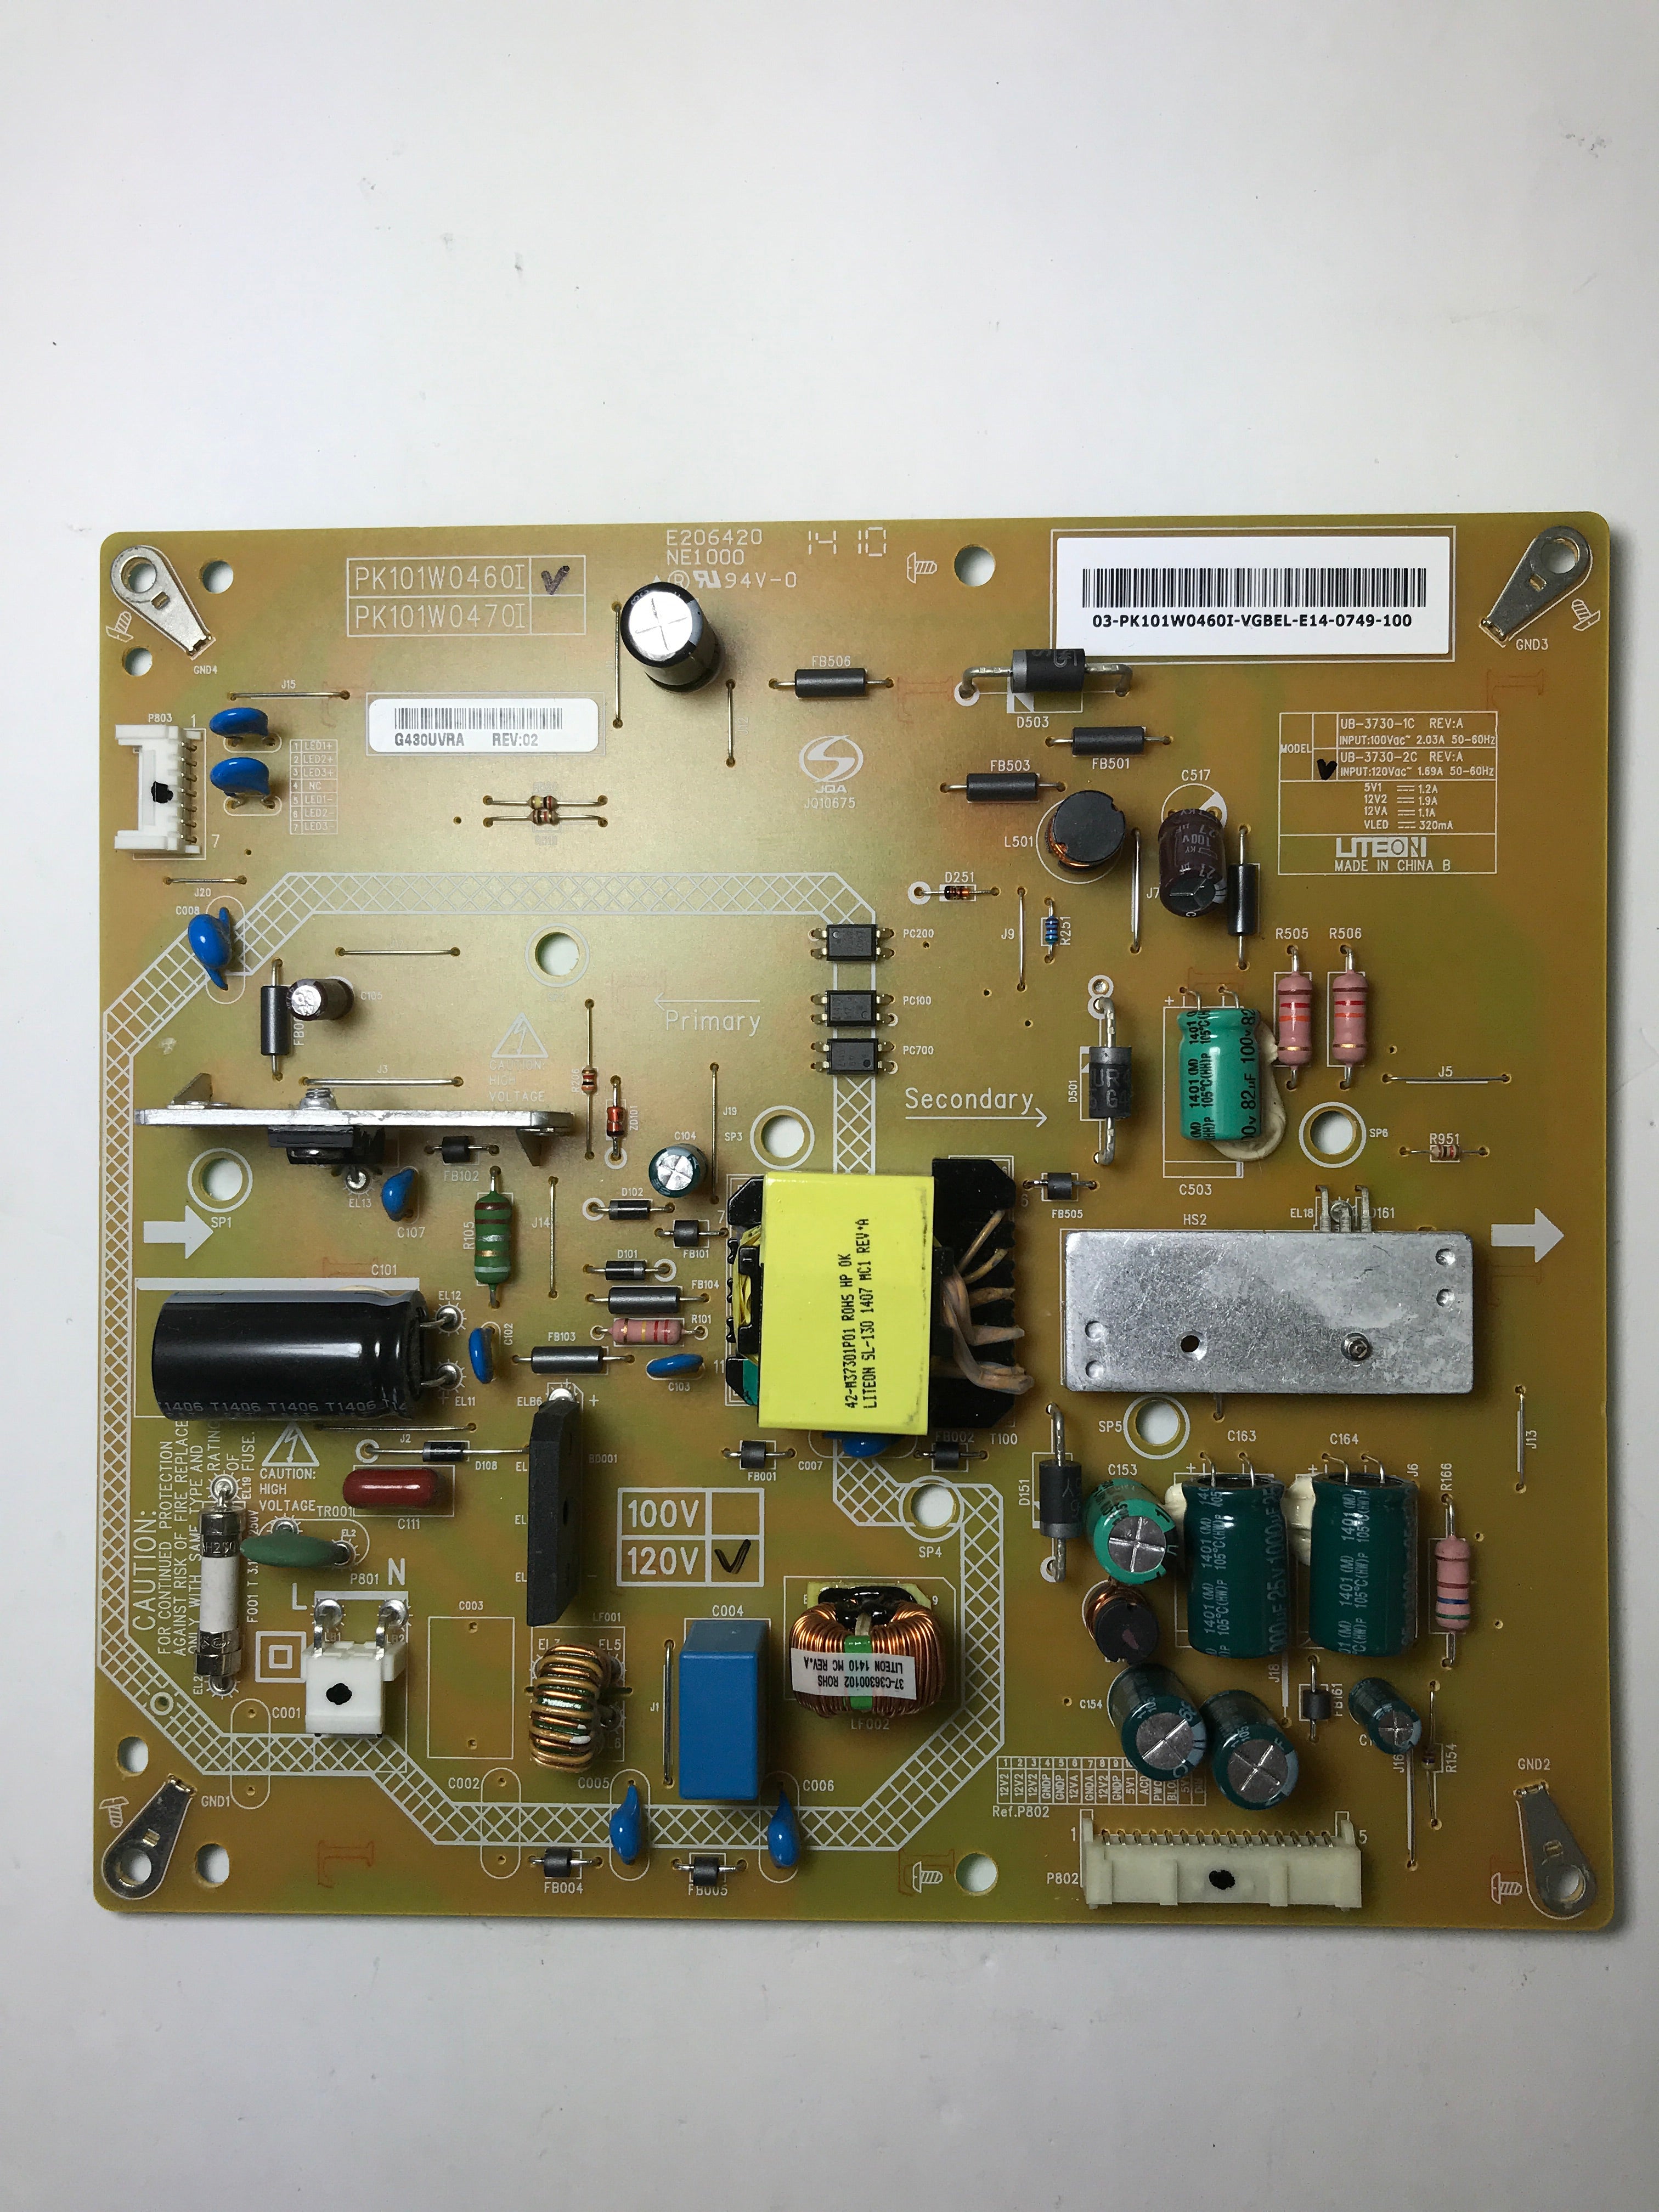 Toshiba PK101W0460I Power Supply / LED Board